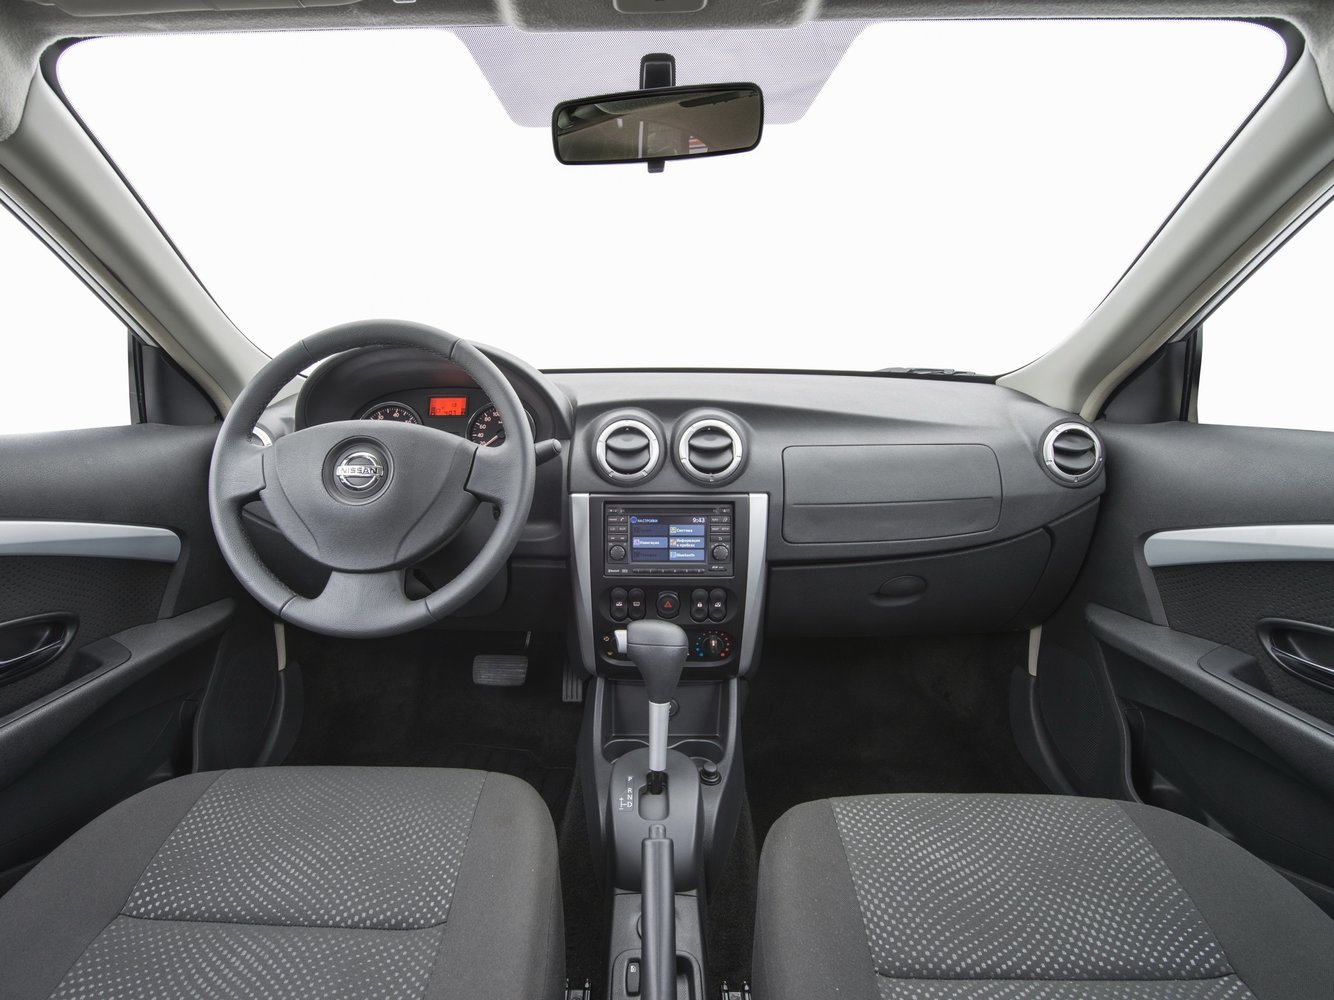 седан Nissan Almera 2013 - 2016г выпуска модификация Comfort 1.6 AT (102 л.с.)